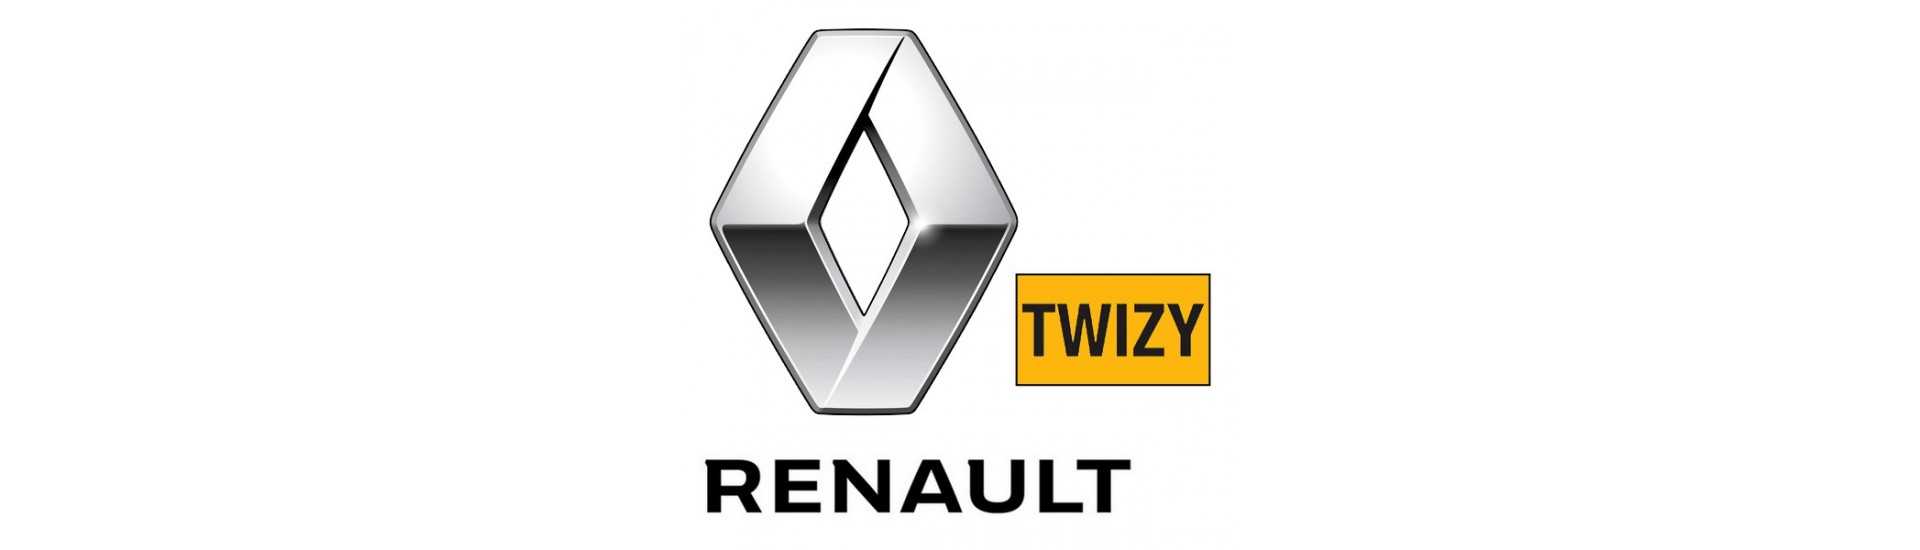 Fyr till bästa pris för bil utan tillstånd Renault Twizy